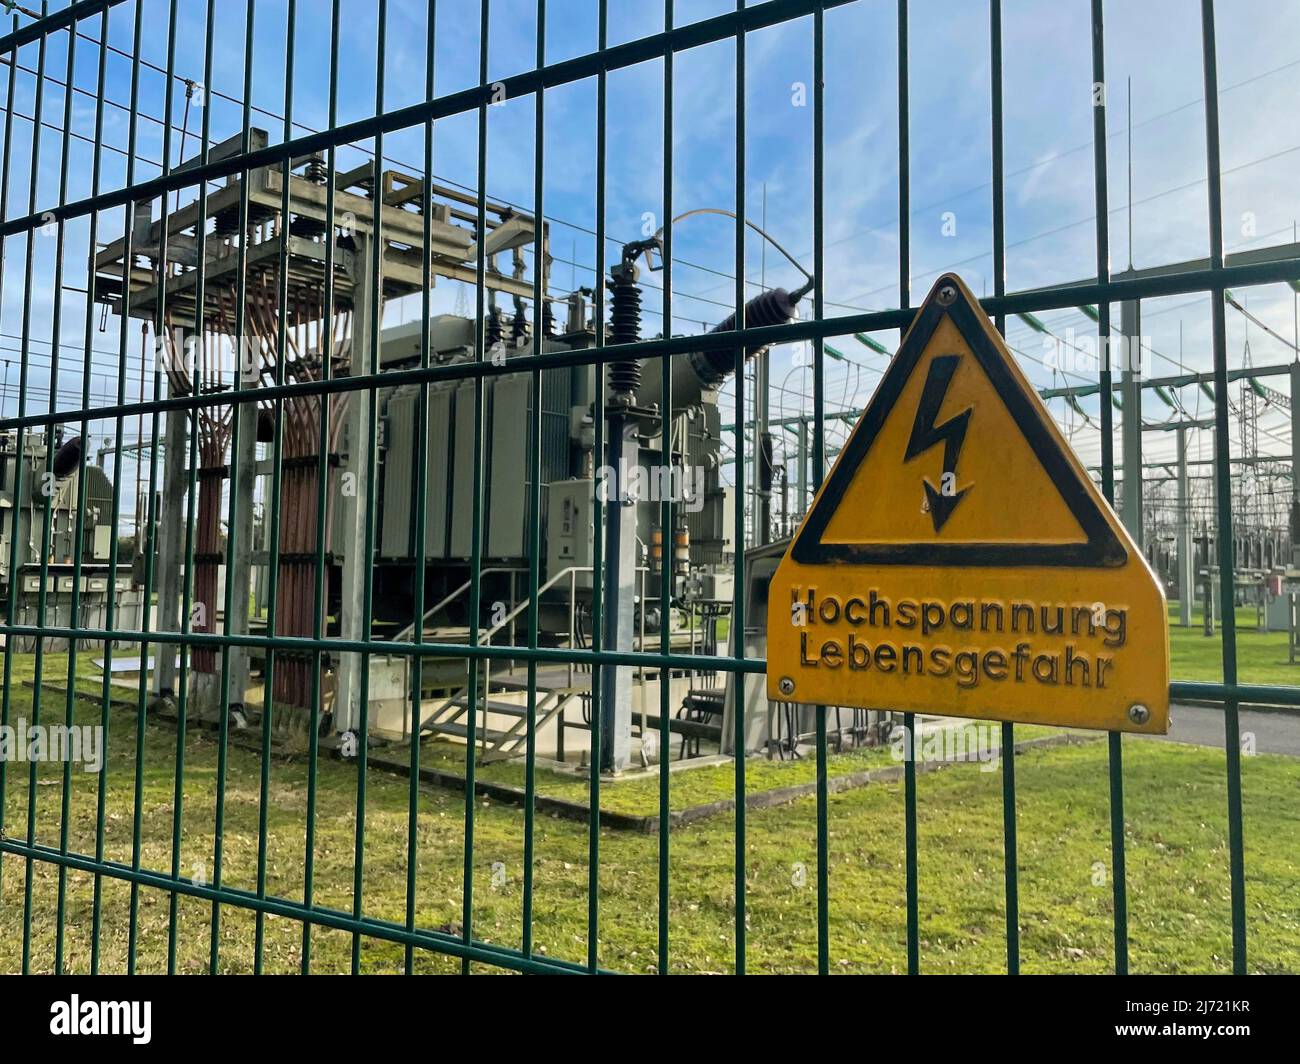 Sicherheitszaun mit Warnschild Hochspannung Lebensgefahr, dahinter Trafo in Umspannwerk fuer Stromversorgung, Nordrhein-Westfalen, Deutschland Foto Stock